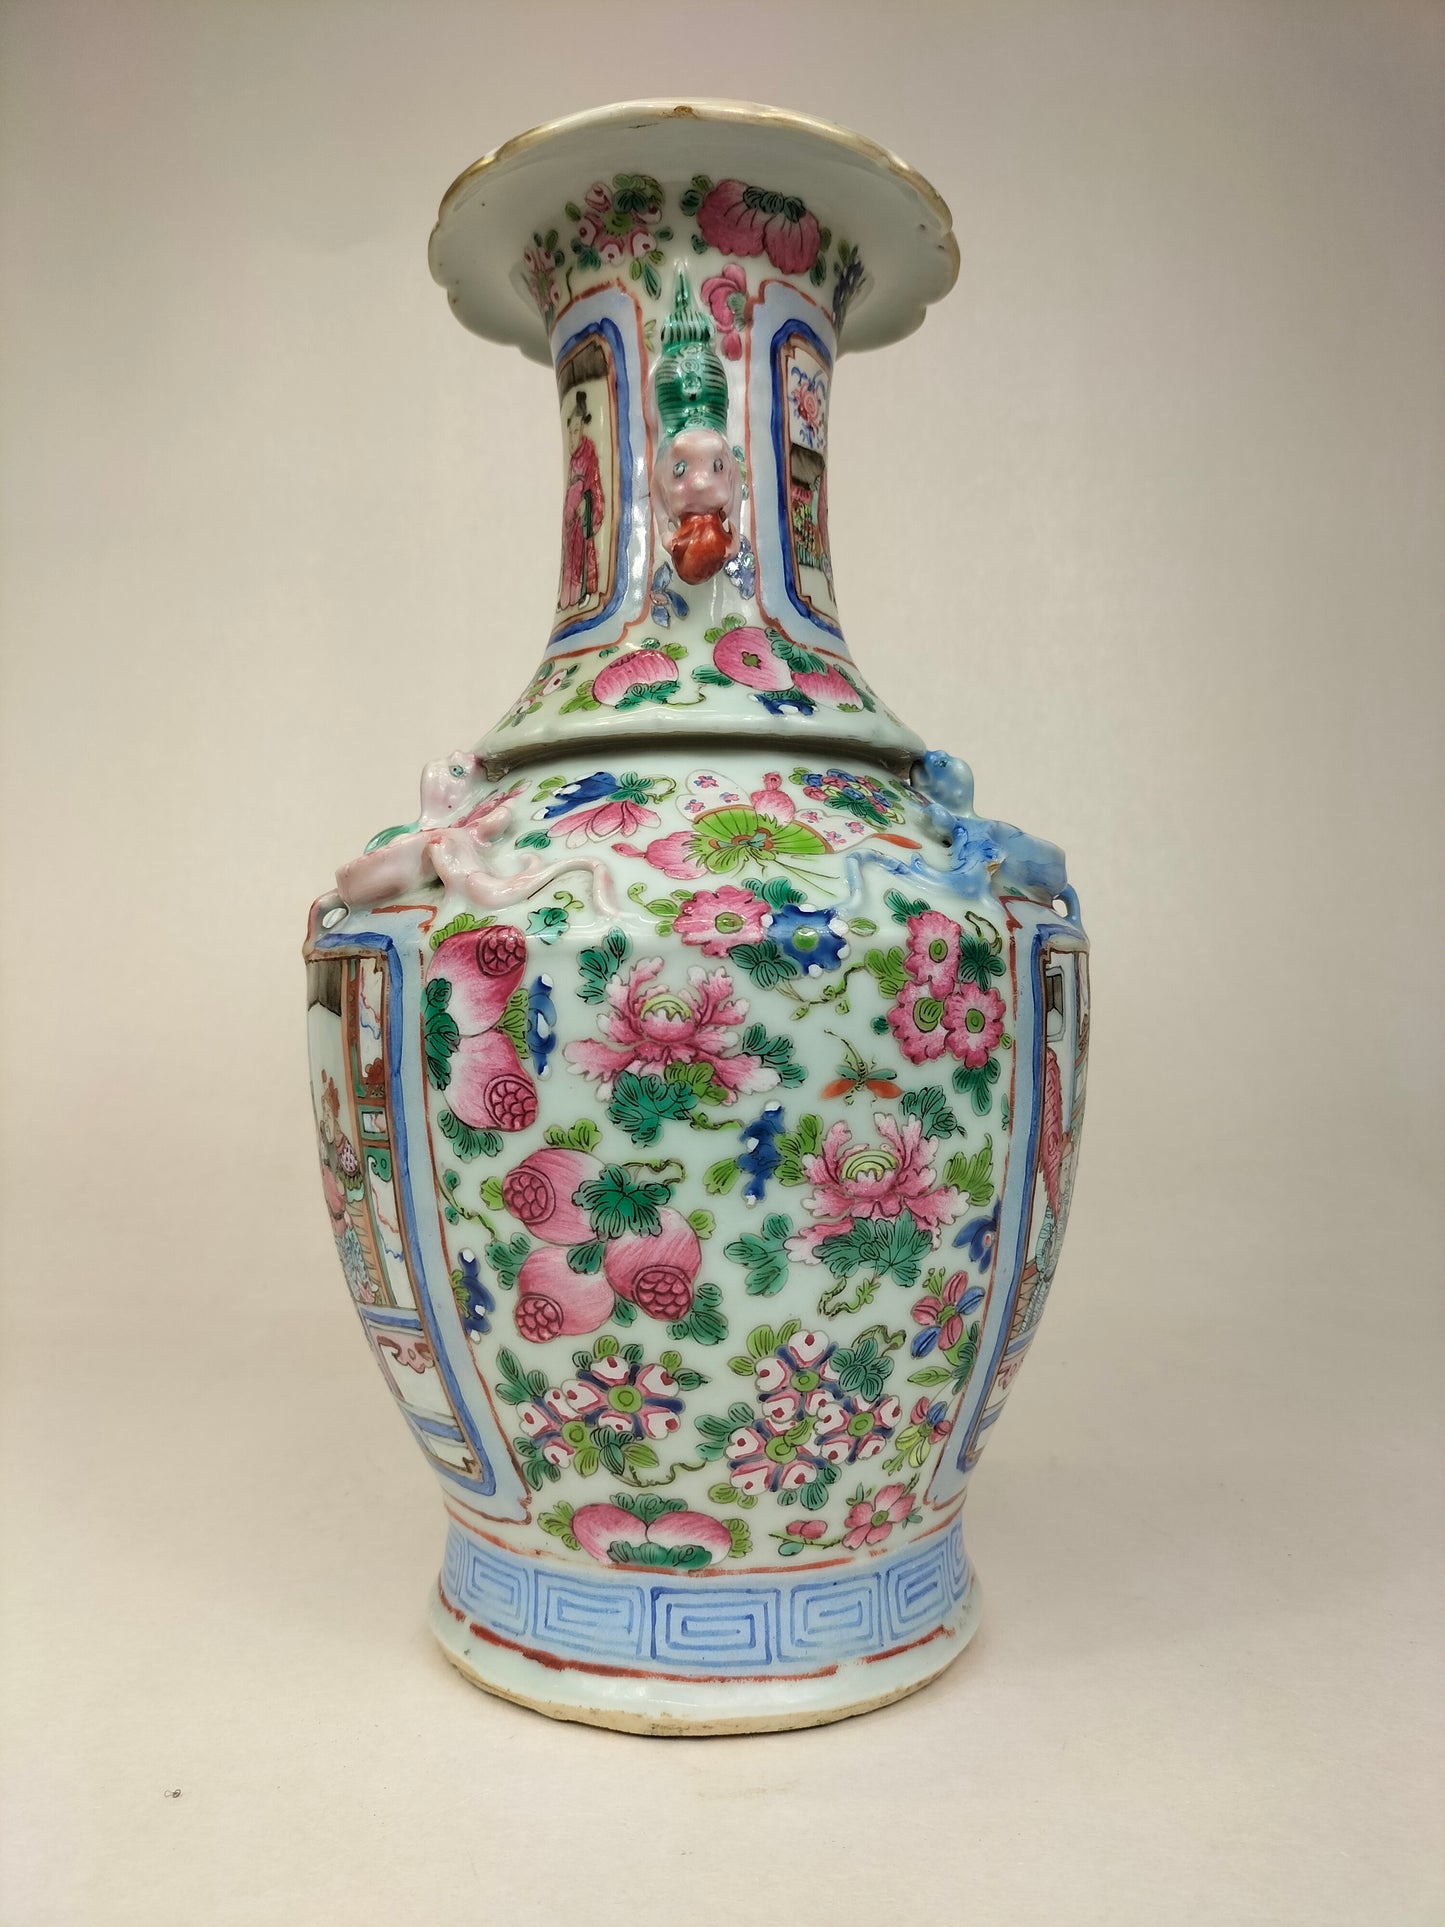 古董中国广州花瓶，饰有皇家场景//清朝 - 19 世纪